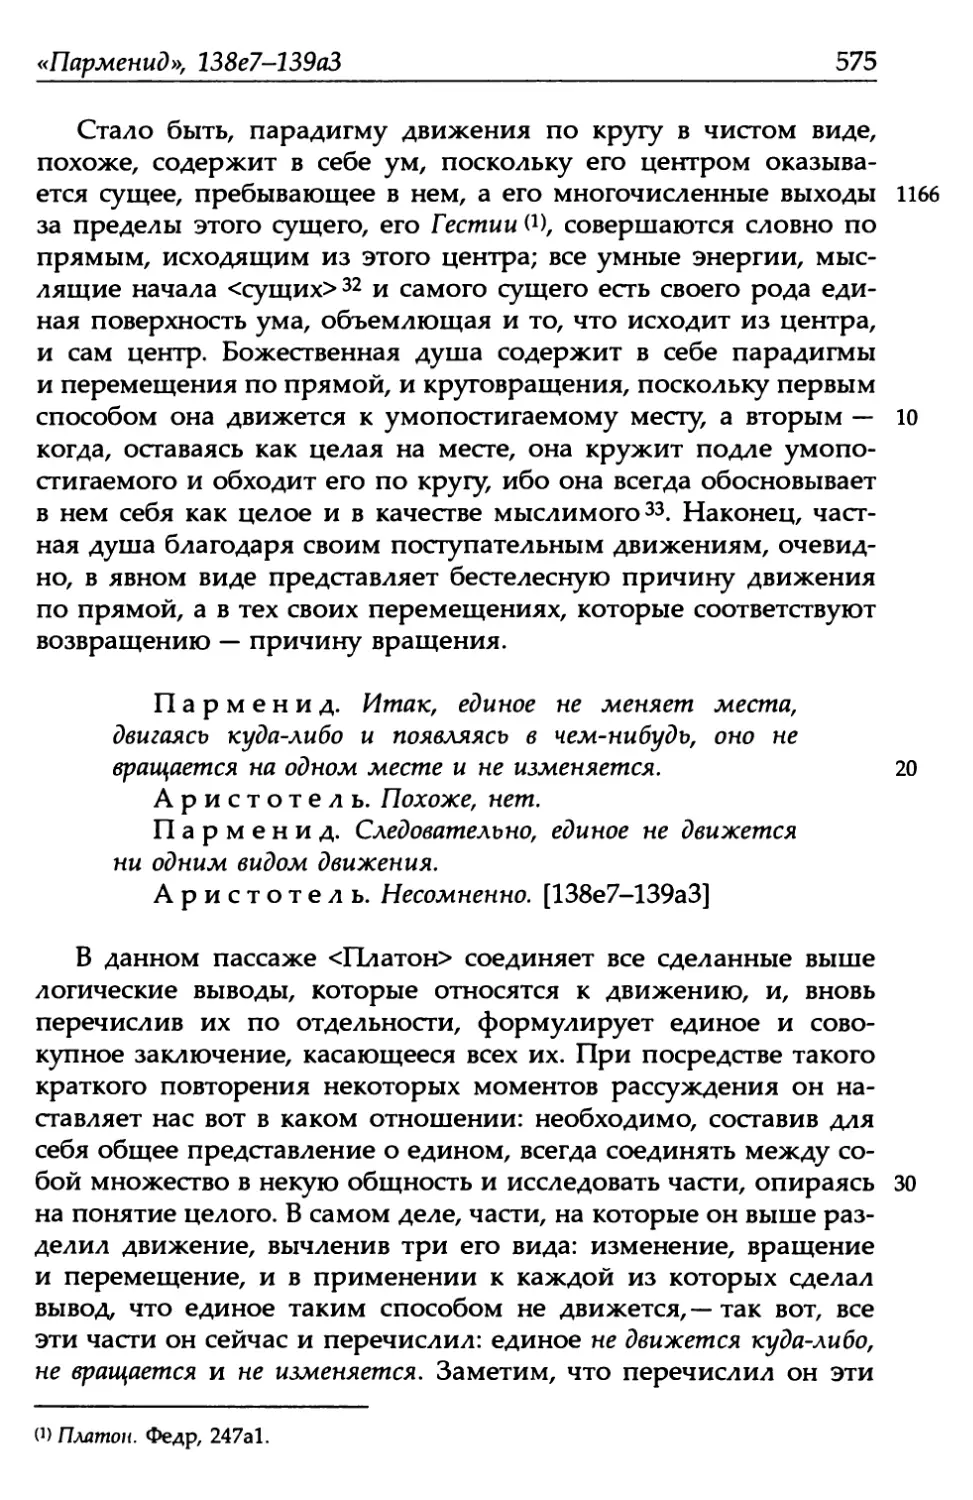 «Парменид», 138е7-139а3